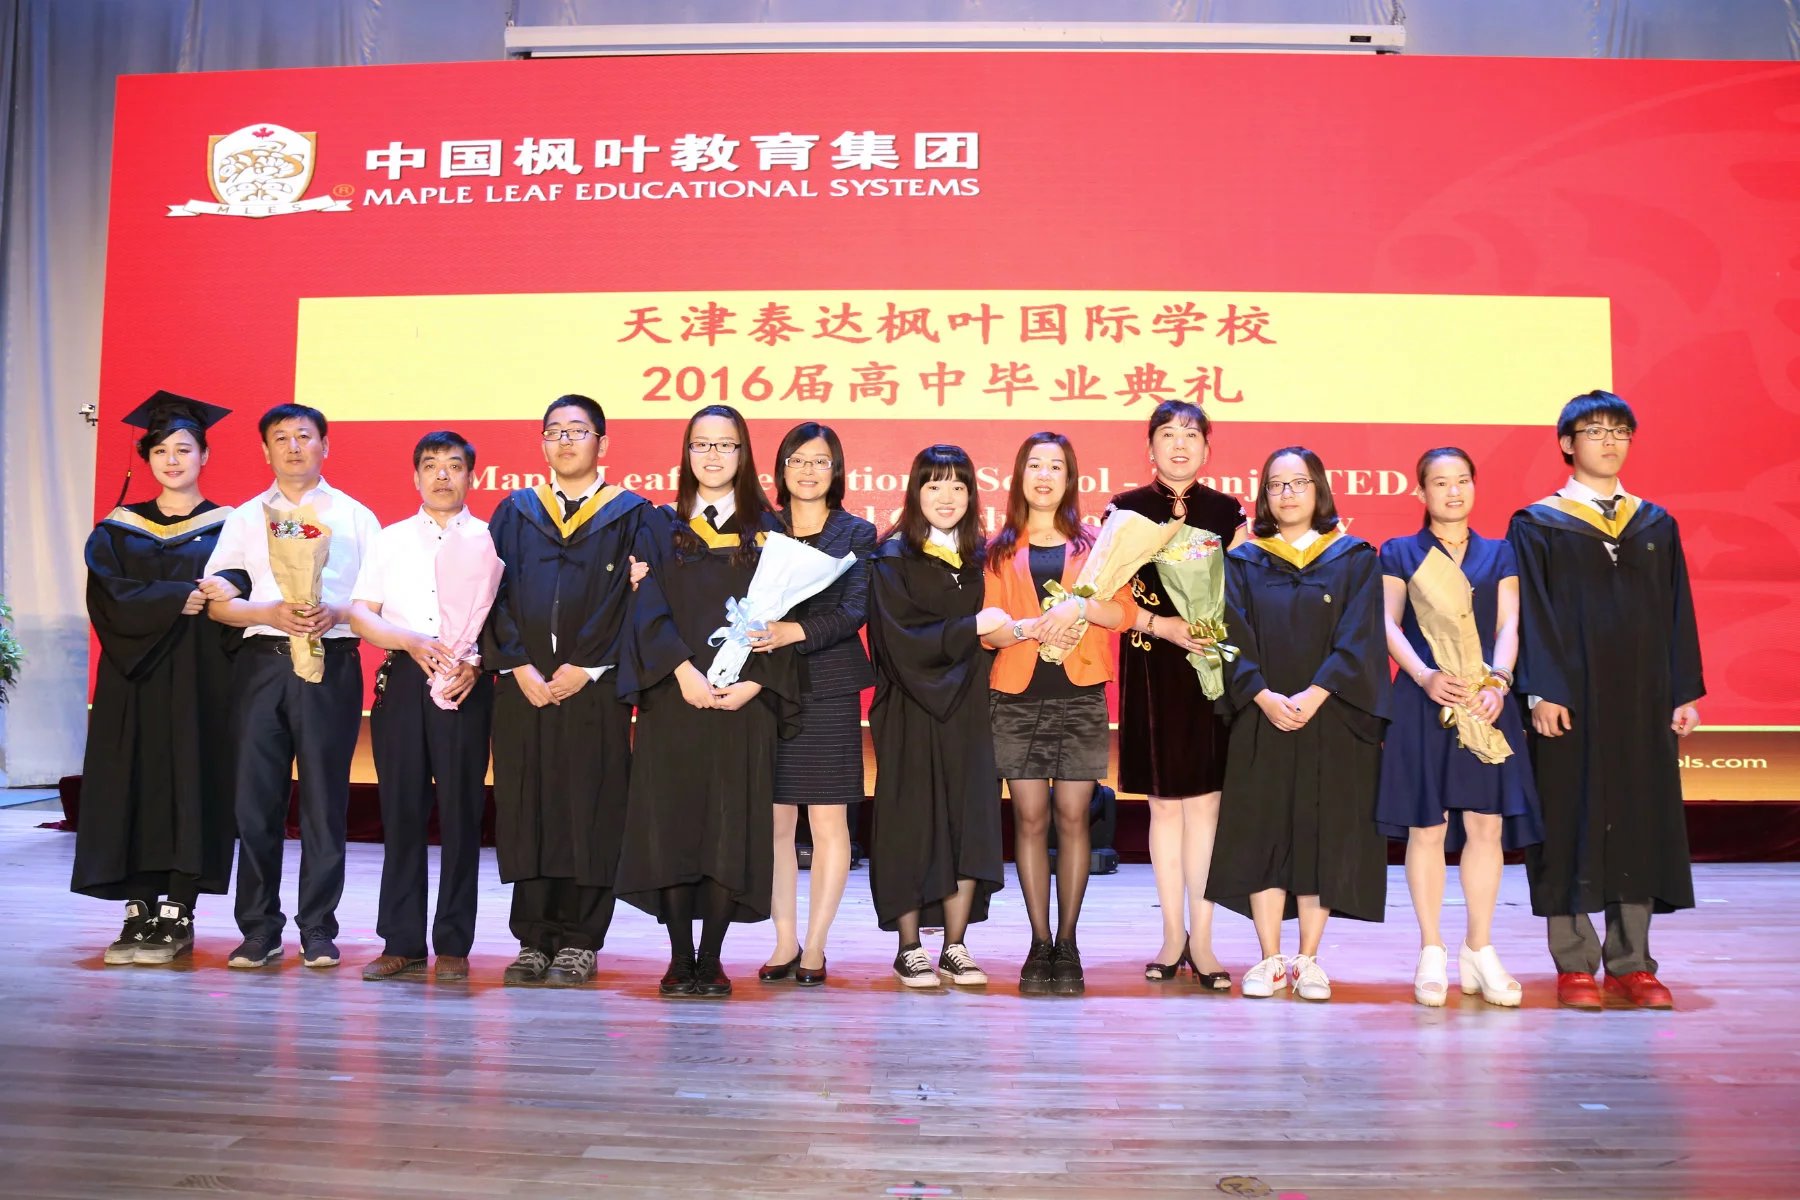 天津泰达枫叶国际学校隆重举行2016届高中毕业典礼